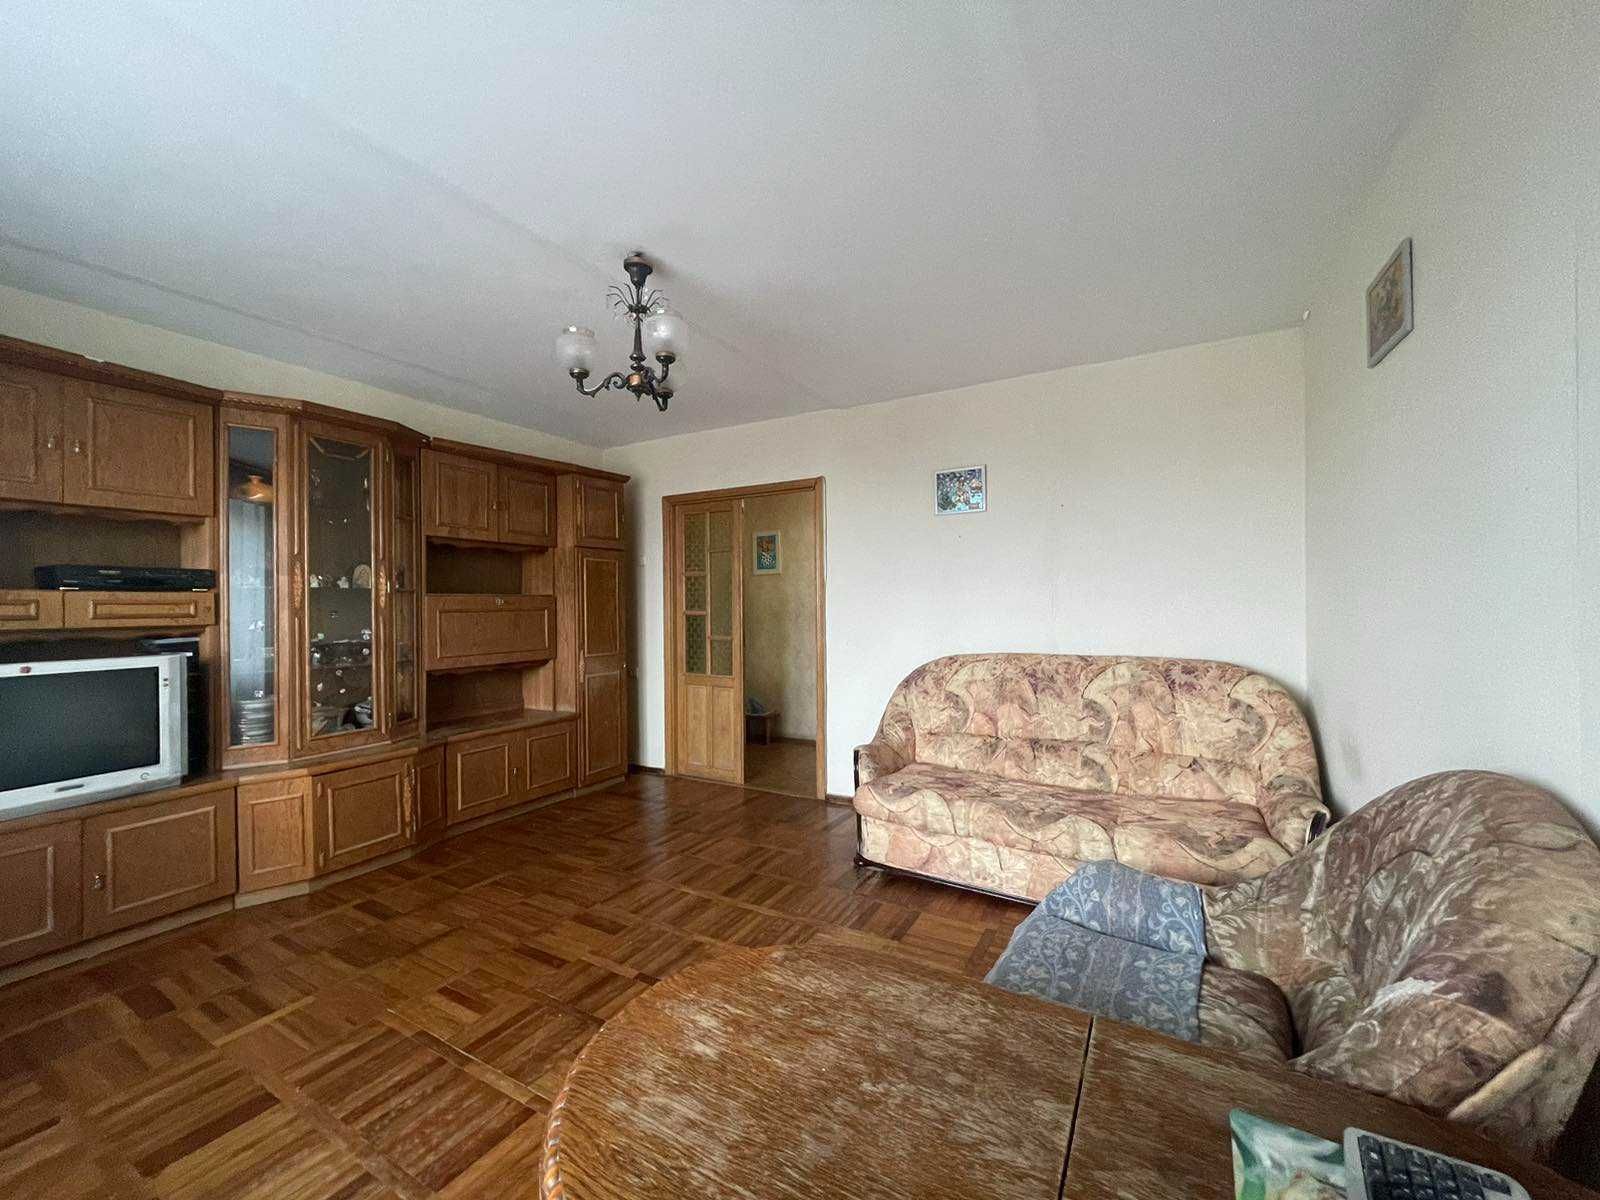 3-кімнатна квартира на розі вулиць Довженка та В.Бердичівської